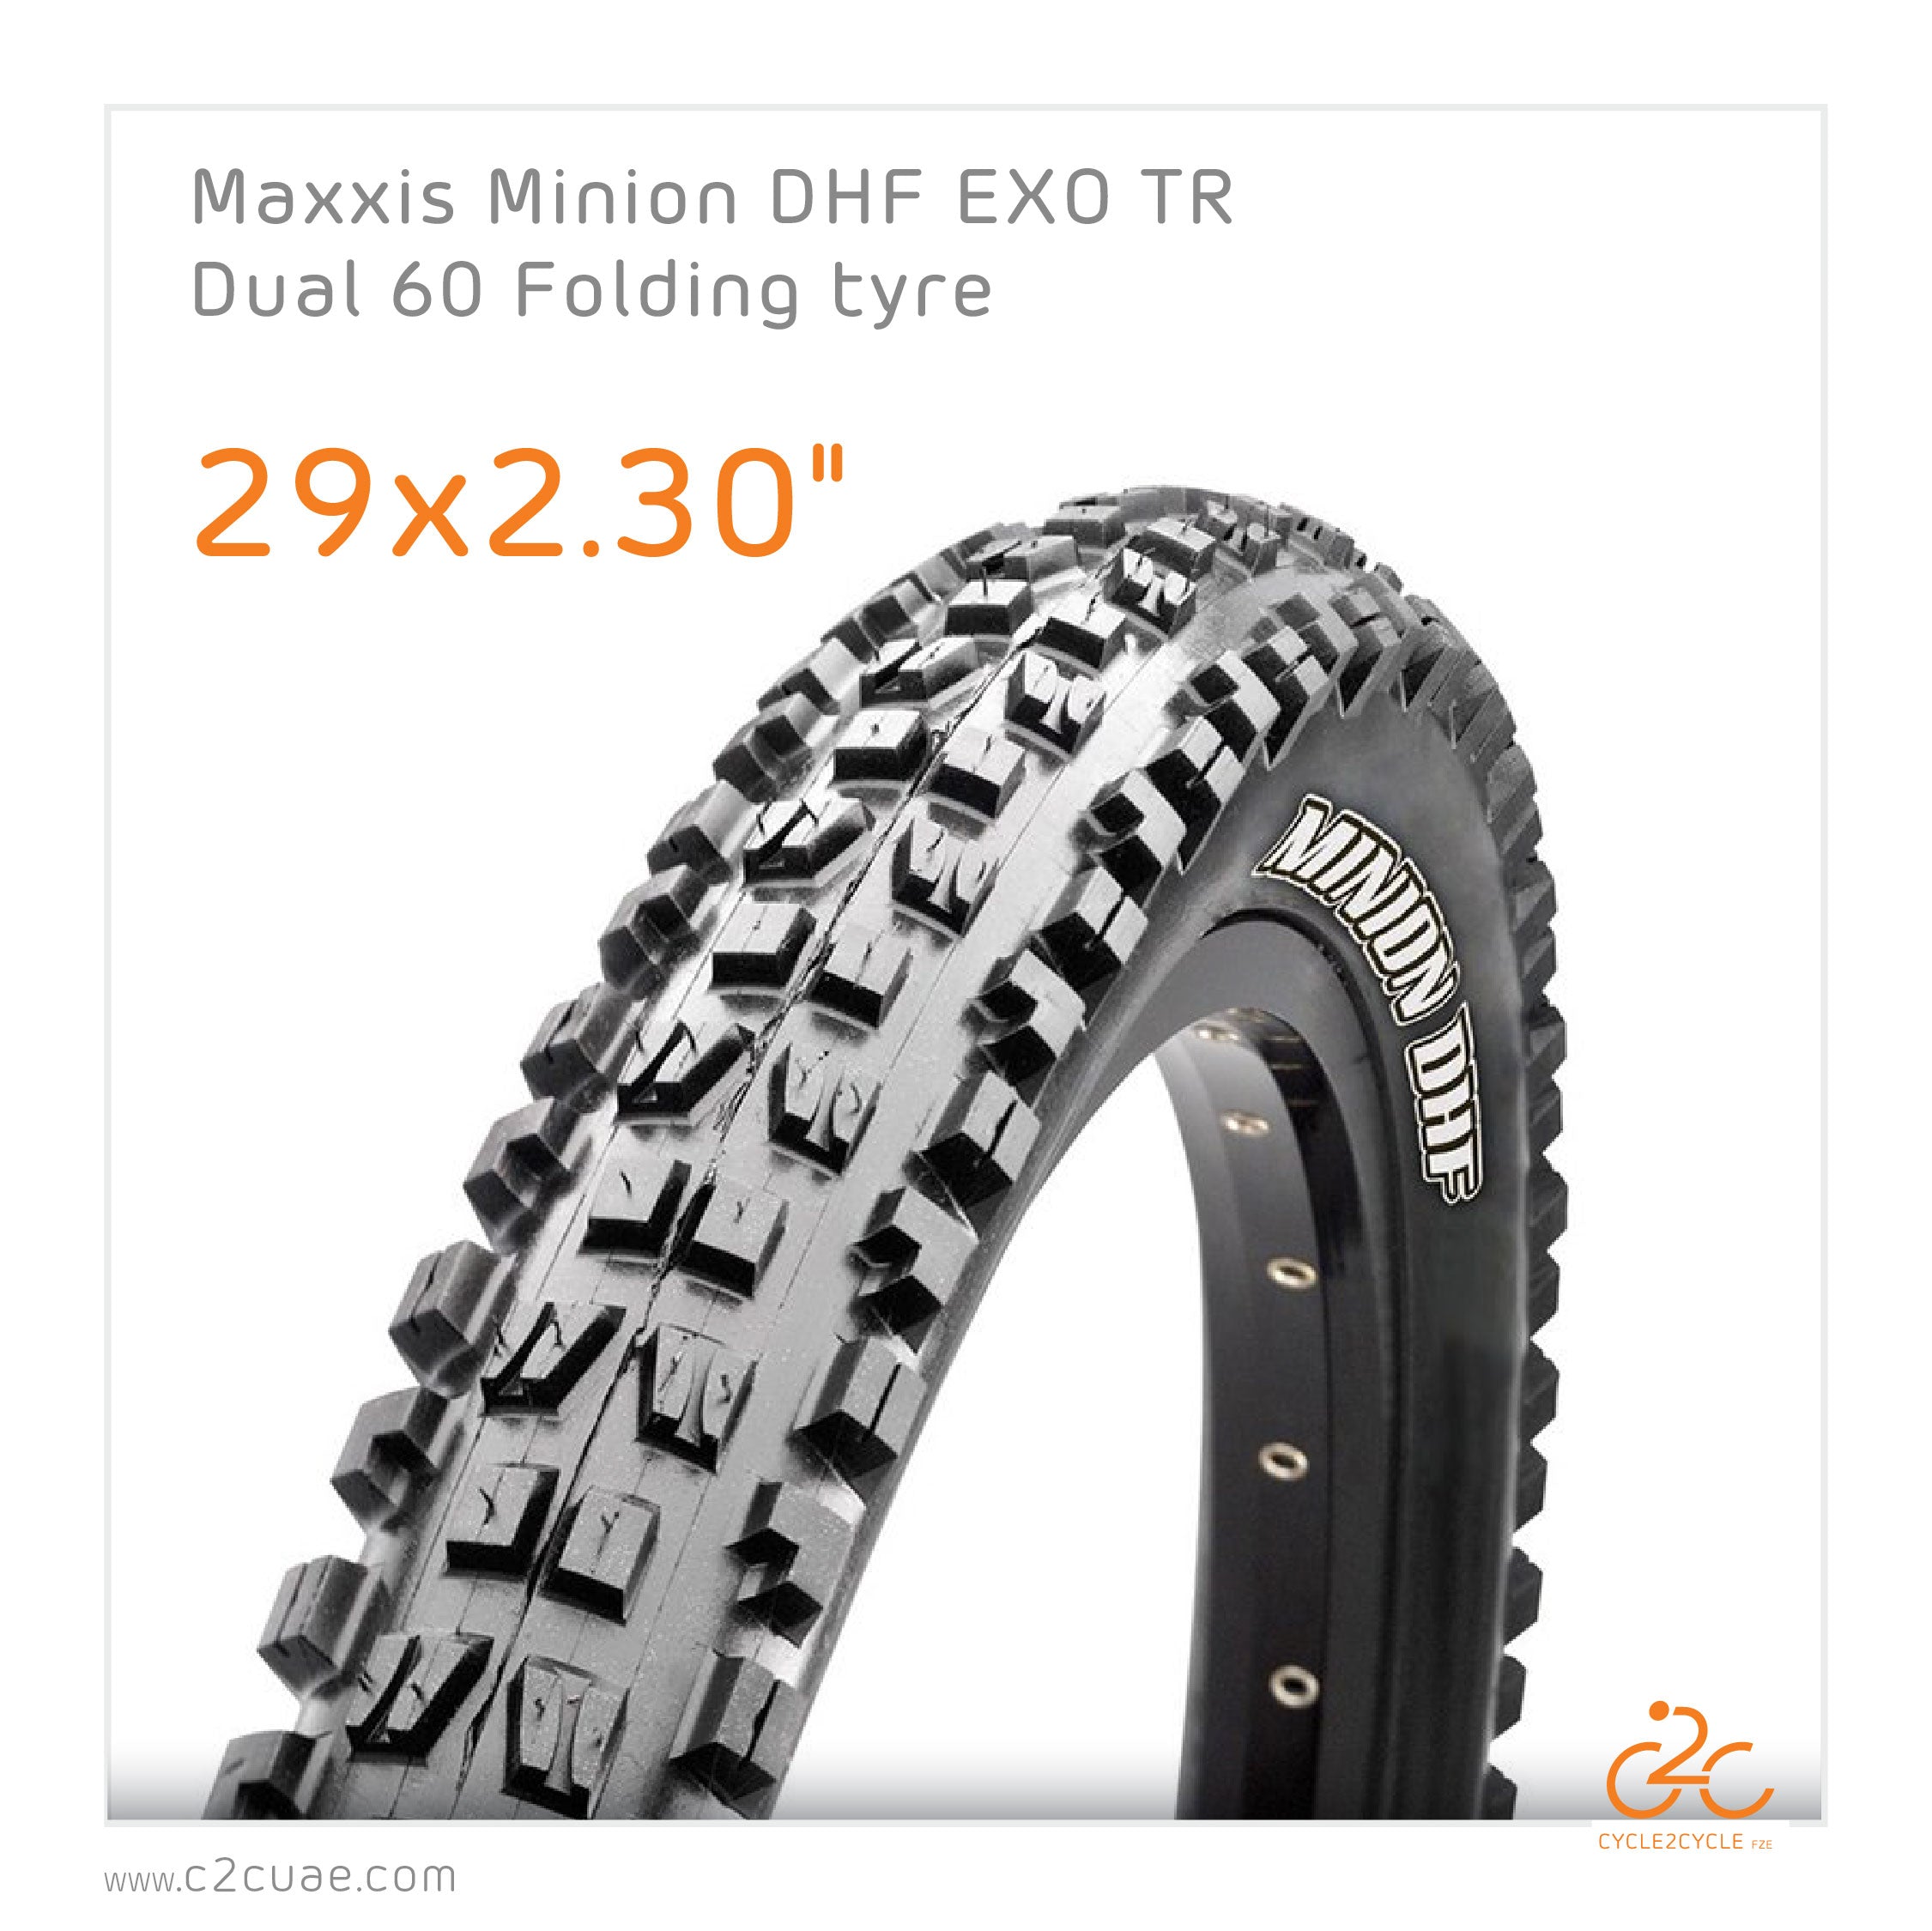 Maxxis Minion DHF 29x2.30" EXO TR Dual (PAIR)